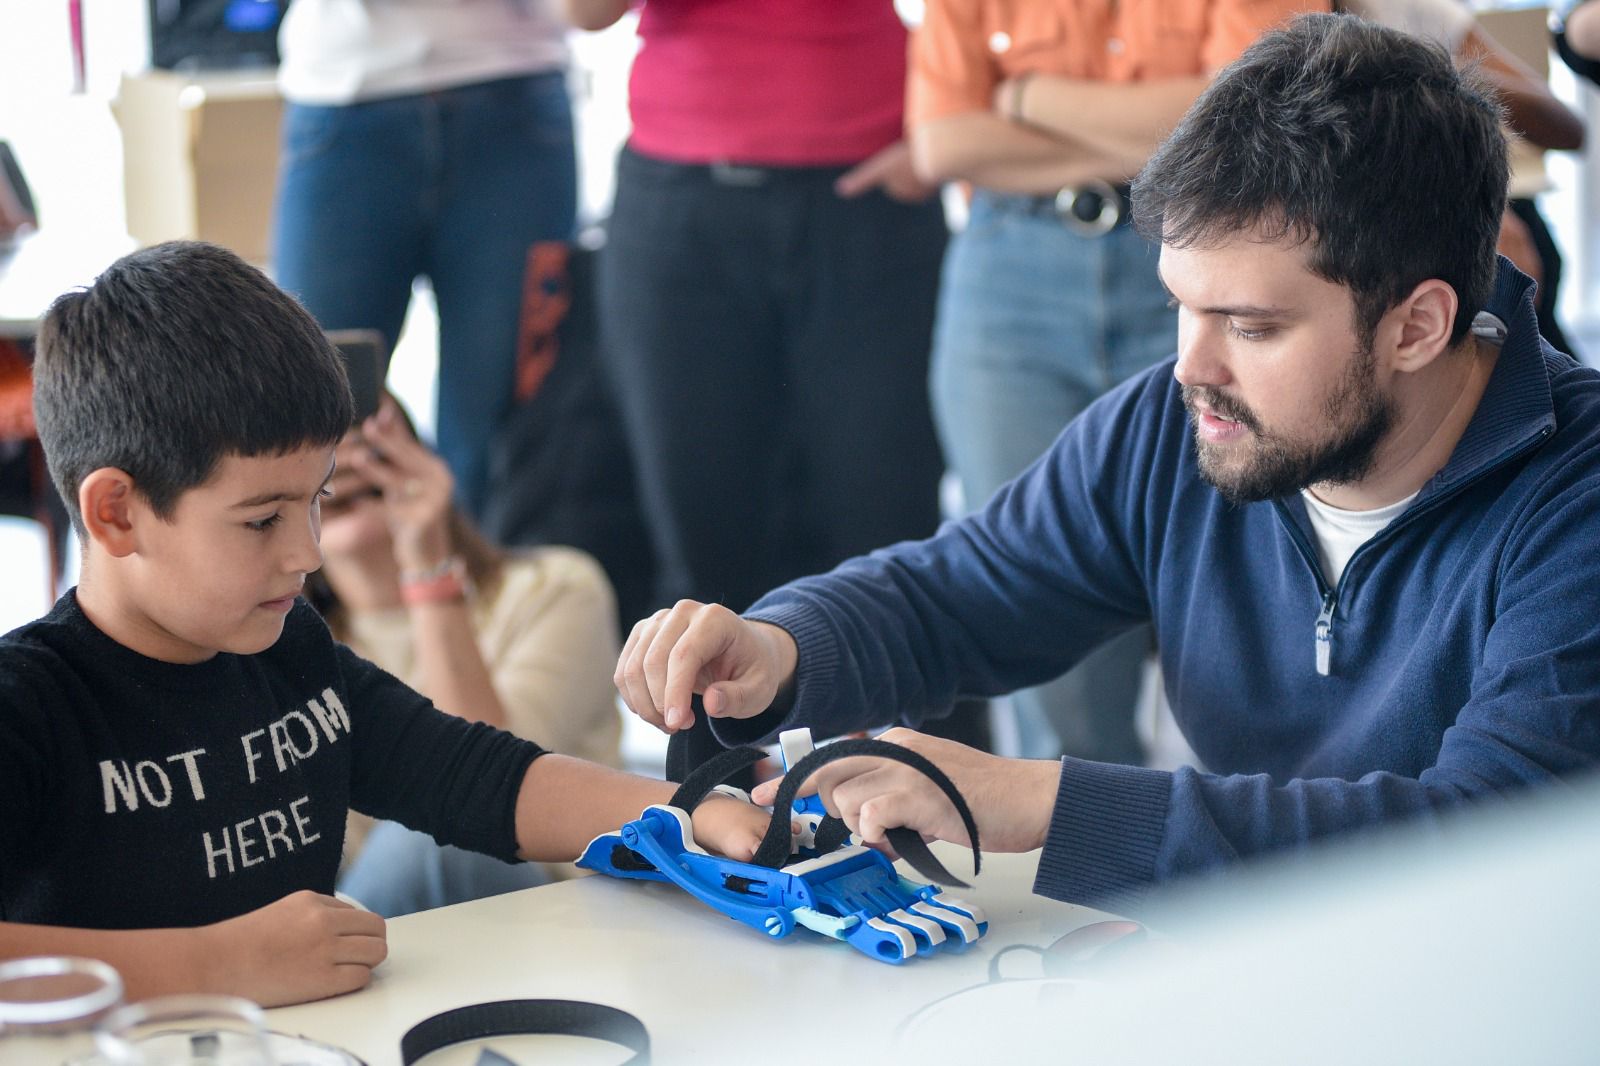 Voluntarios del Banco Macro colocaron prótesis realizadas con impresoras 3D